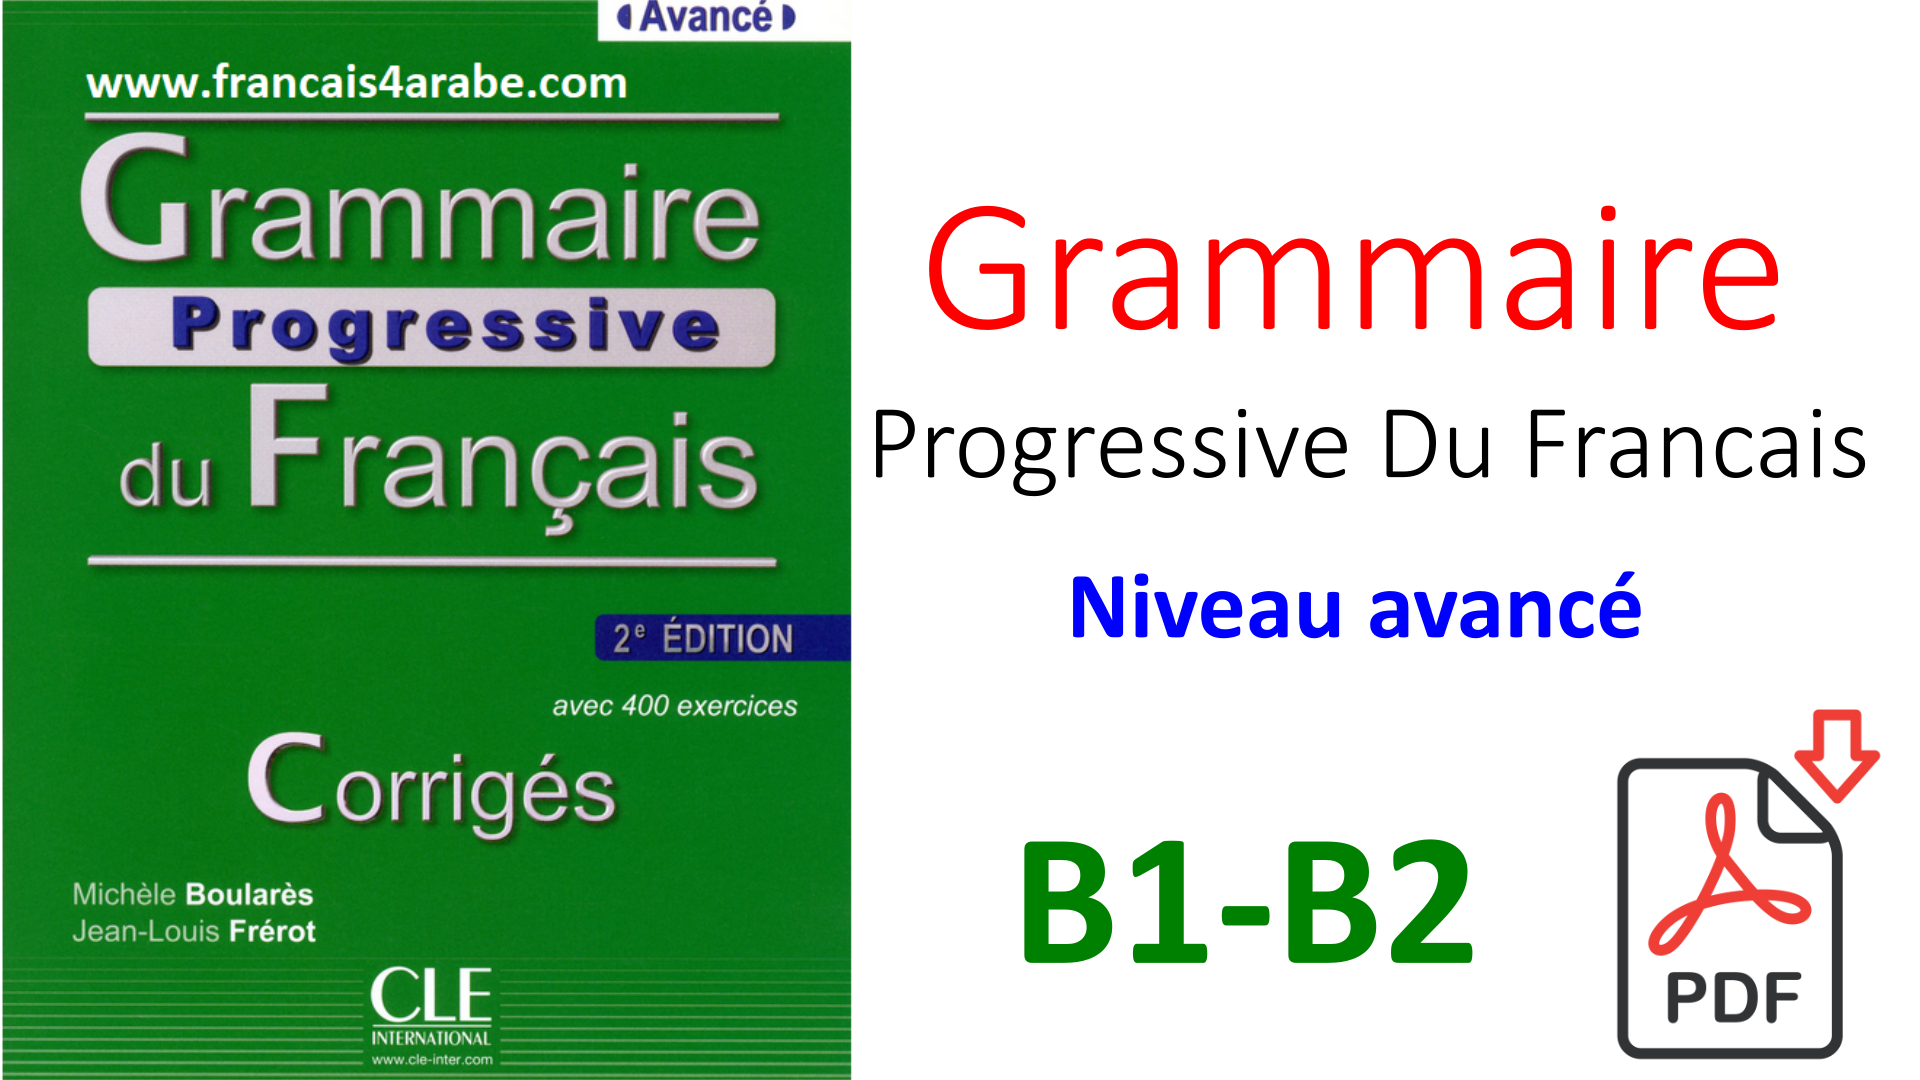 Grammaire Progressive du Francais 2 Edition. Grammaire. Grammaire Progressive du Francais a2 b1 ответы. Grammaire Progressive du Francais Intermediate. French pdf